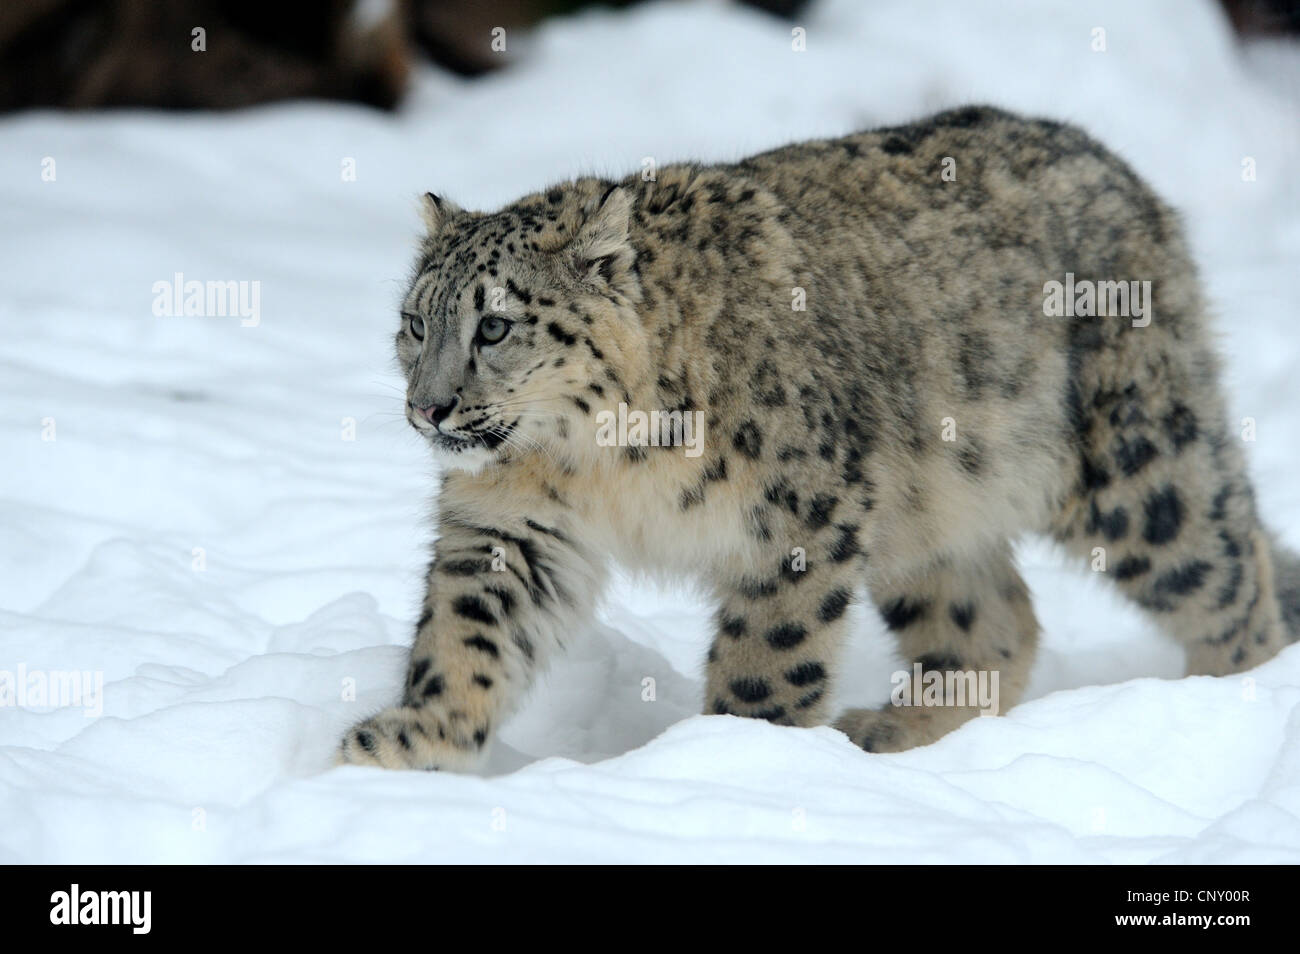 Léopard des neiges (Uncia uncia, Panthera uncia), walking in snow Banque D'Images